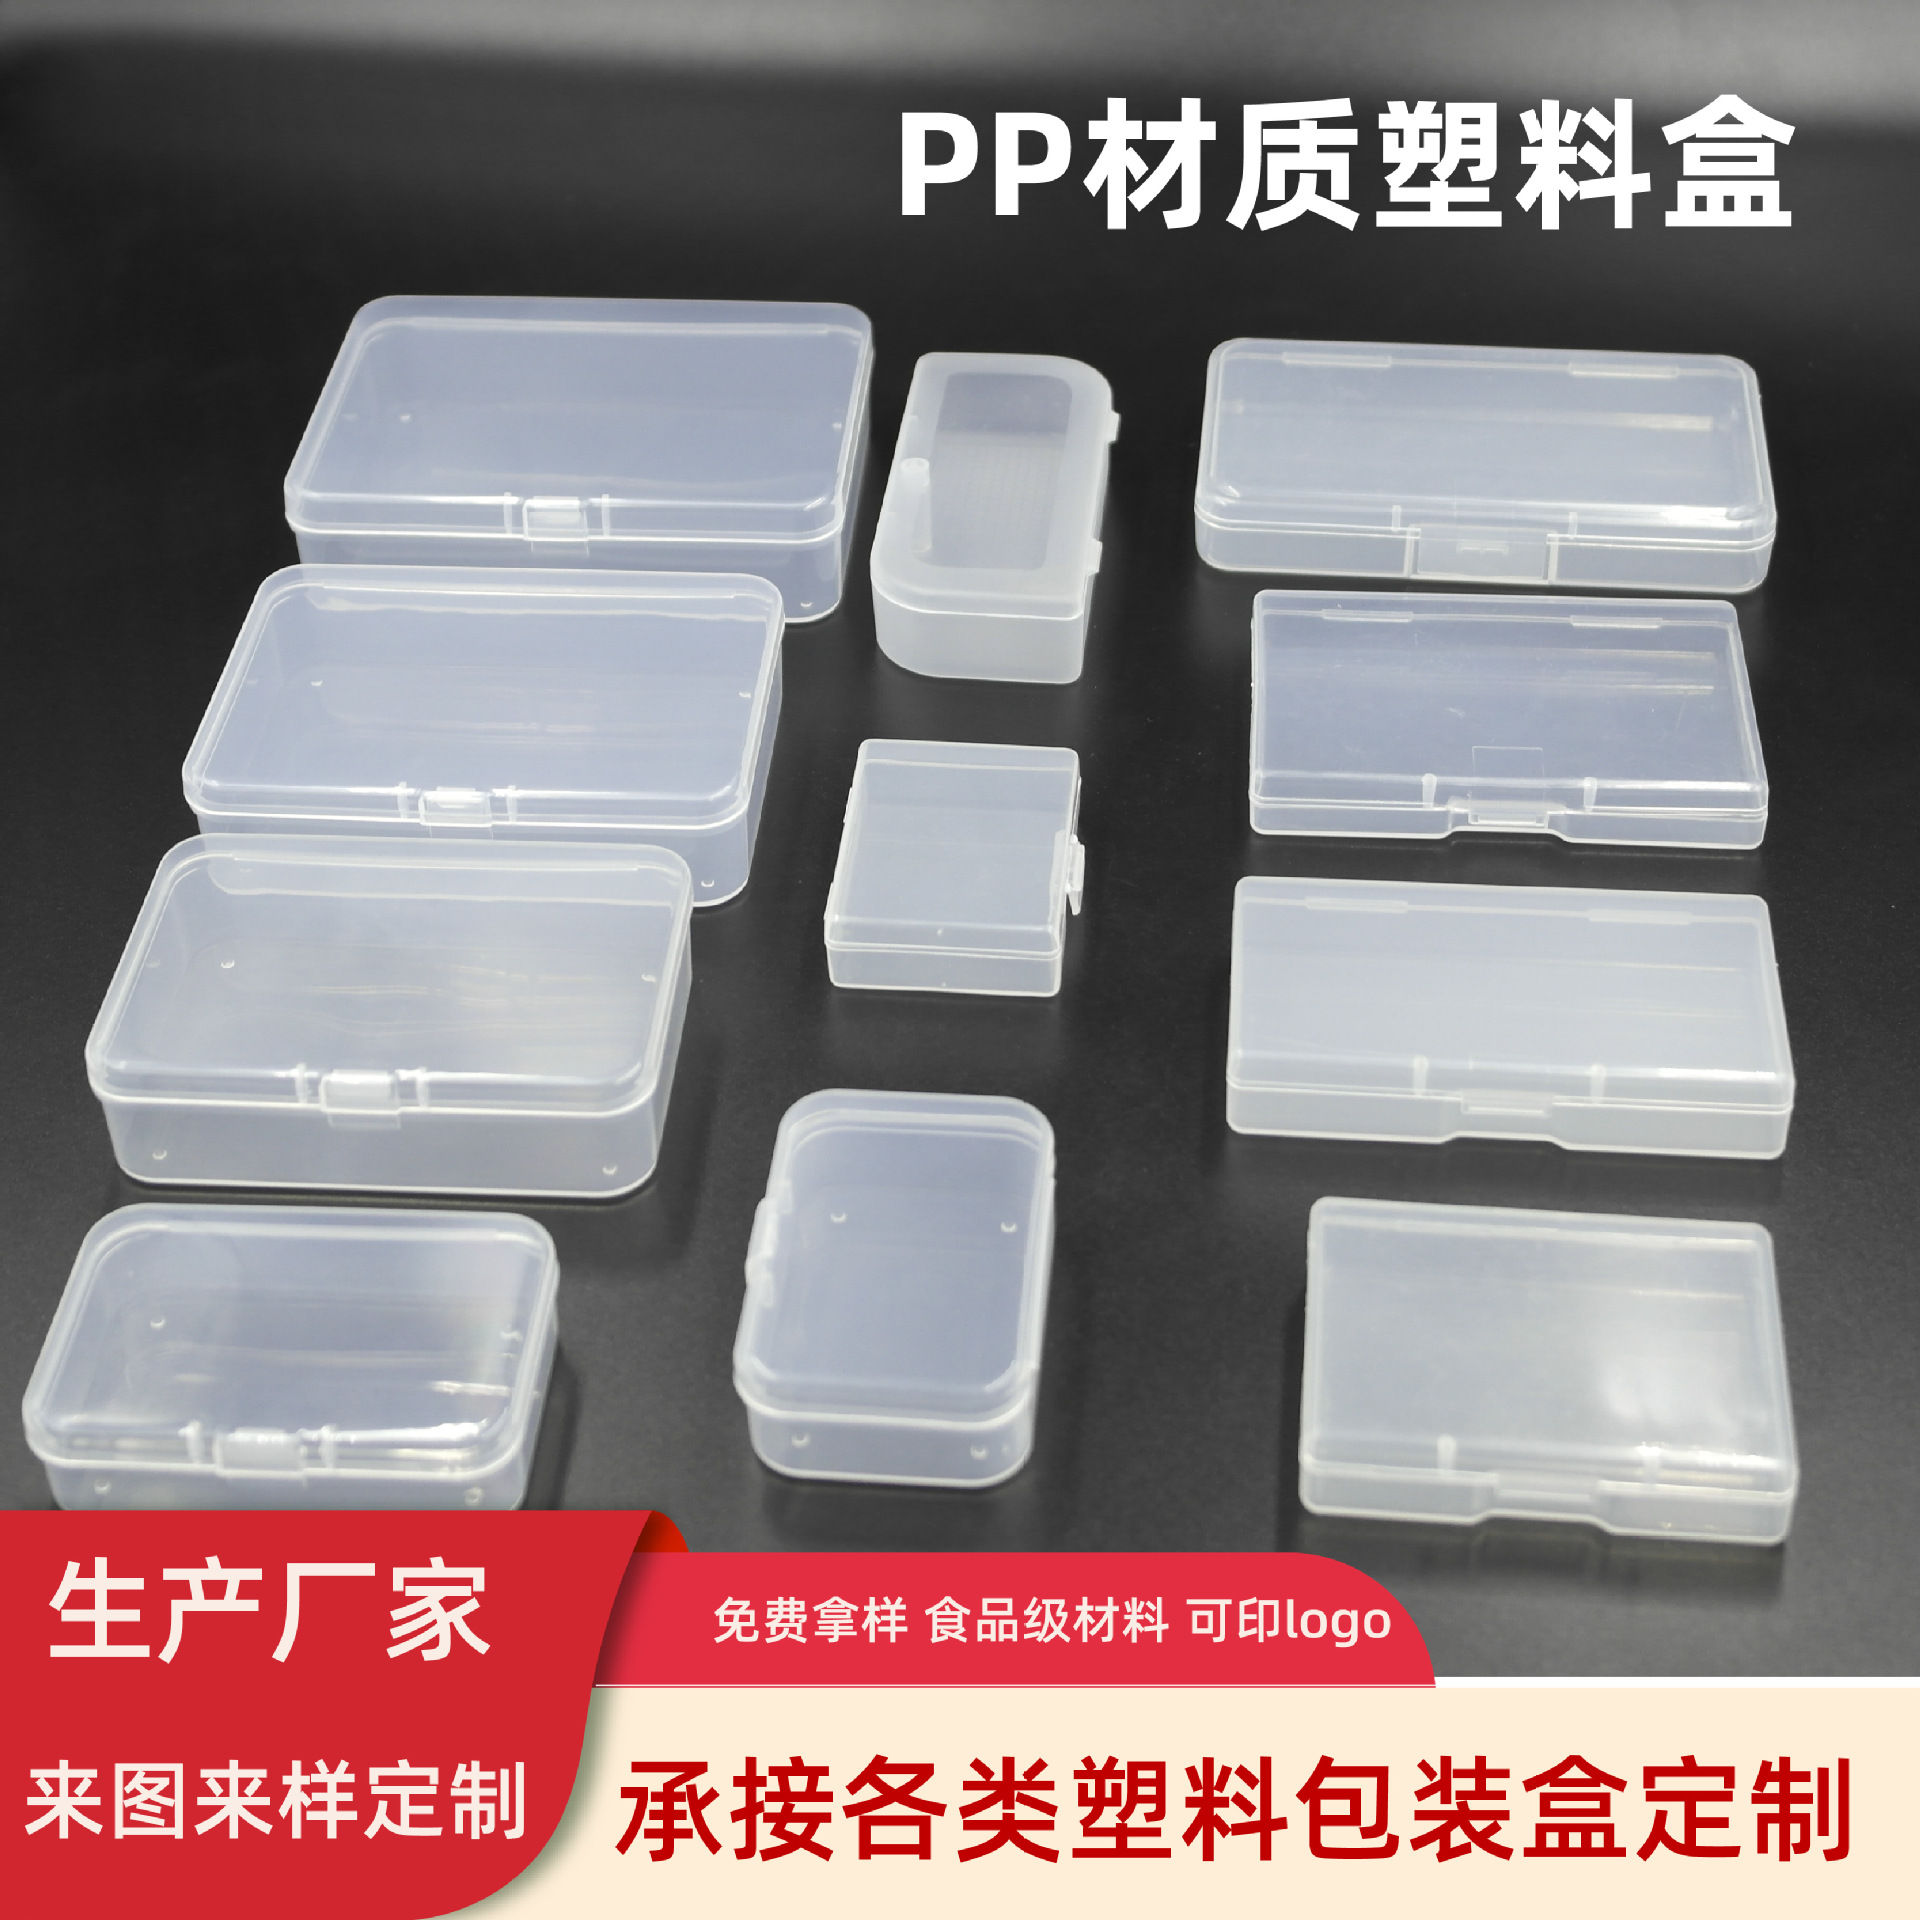 PP透明注塑盒工厂方形塑胶盒PP塑料盒PP注塑盒厂家PP塑胶盒现货